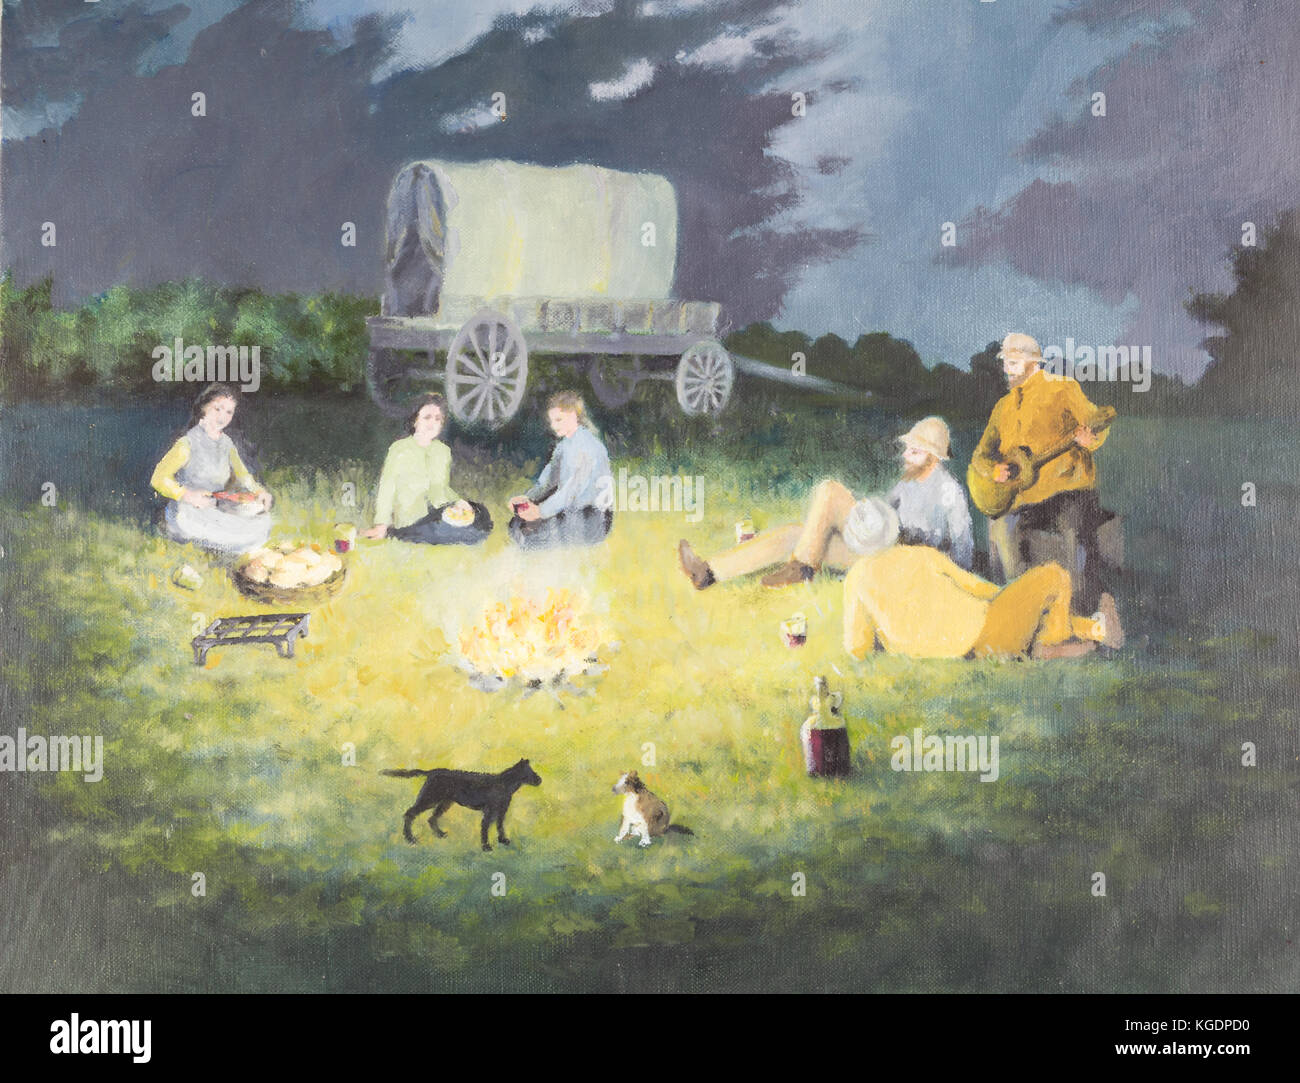 Peinture à l'huile originale sur toile - scène de camp pioneer avec les gens de préparer des aliments, playig guitare, chiens et de l'ouest couvert wagon en arrière-plan Banque D'Images